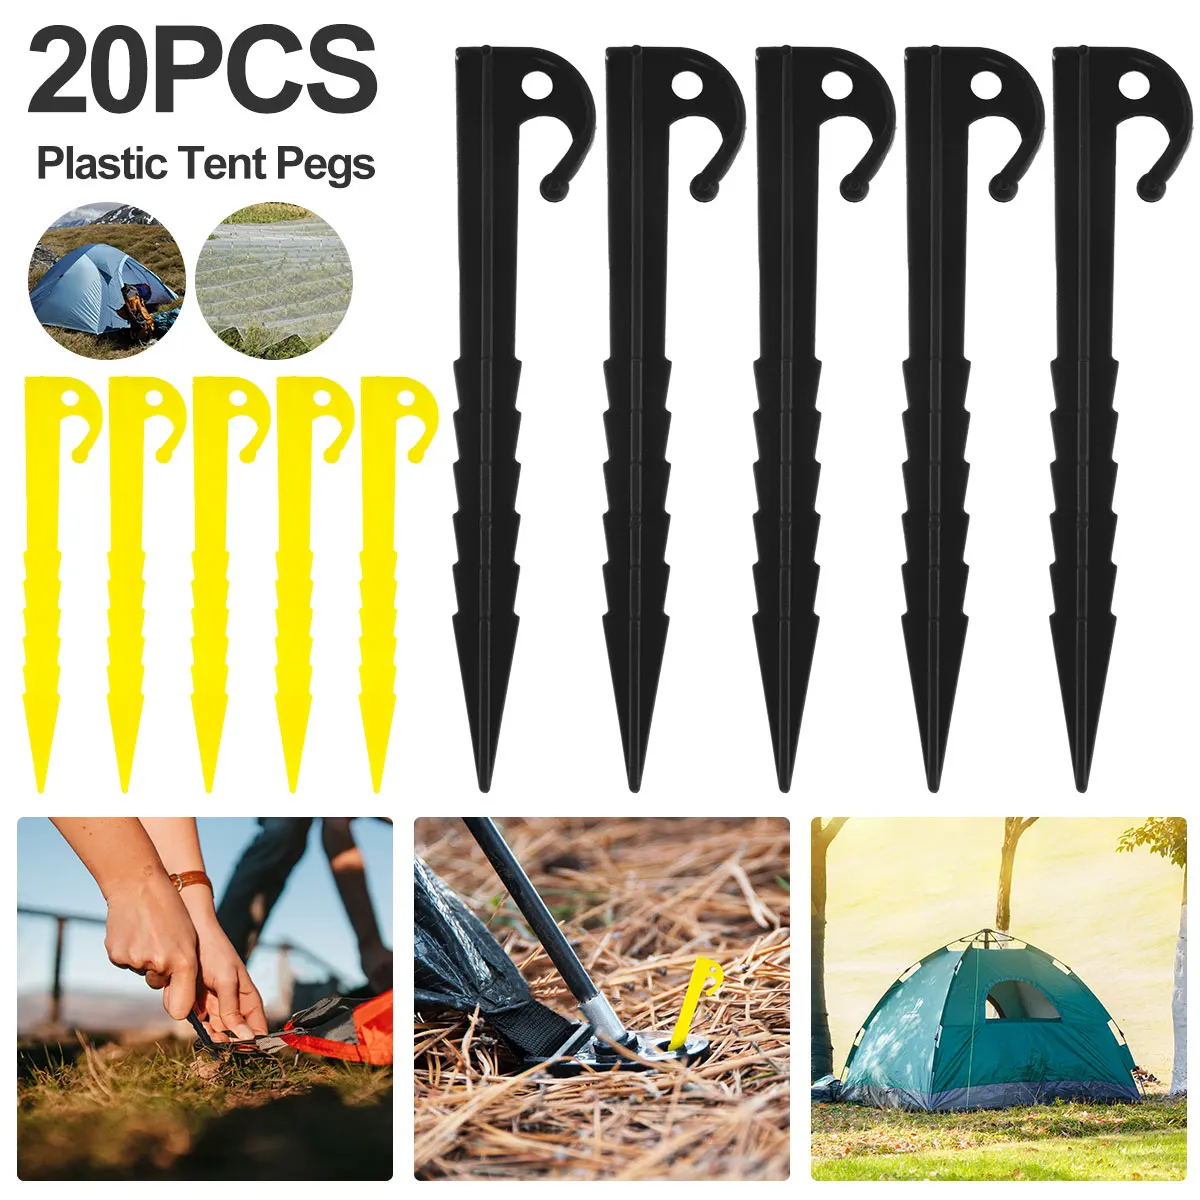 

Колышки для палатки повышенной прочности 20 шт., колышки для палатки 5,7 дюйма, колышки с шипами, колышки для палатки из легкого пластика, колыш...